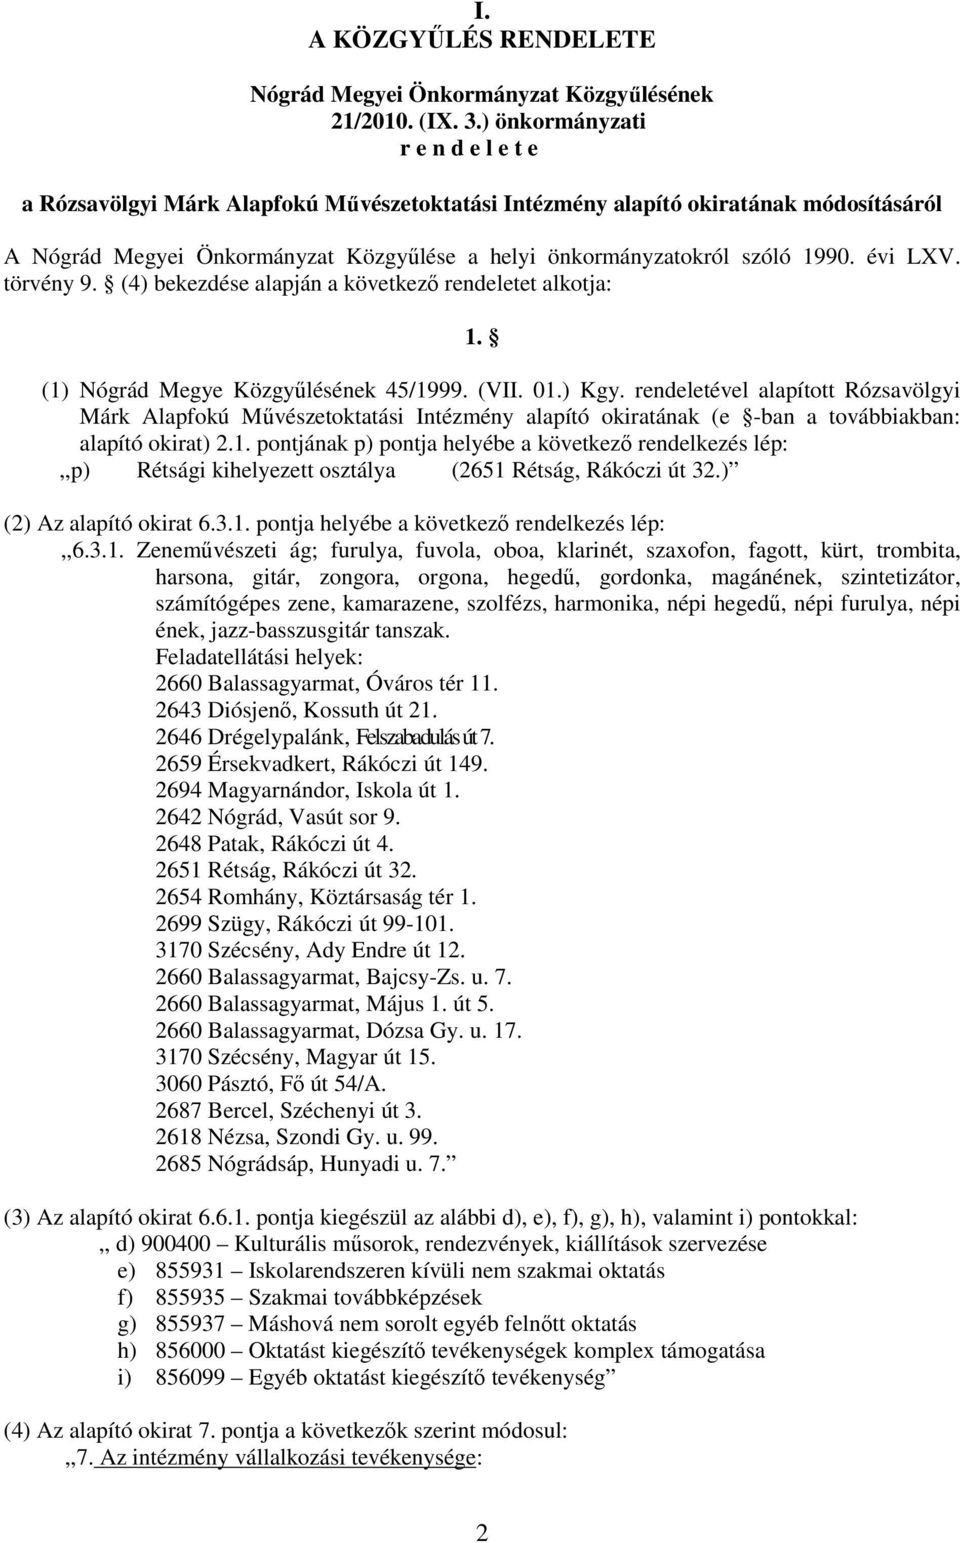 évi LXV. törvény 9. (4) bekezdése alapján a következő rendeletet alkotja: 1. (1) Nógrád Megye Közgyűlésének 45/1999. (VII. 01.) Kgy.